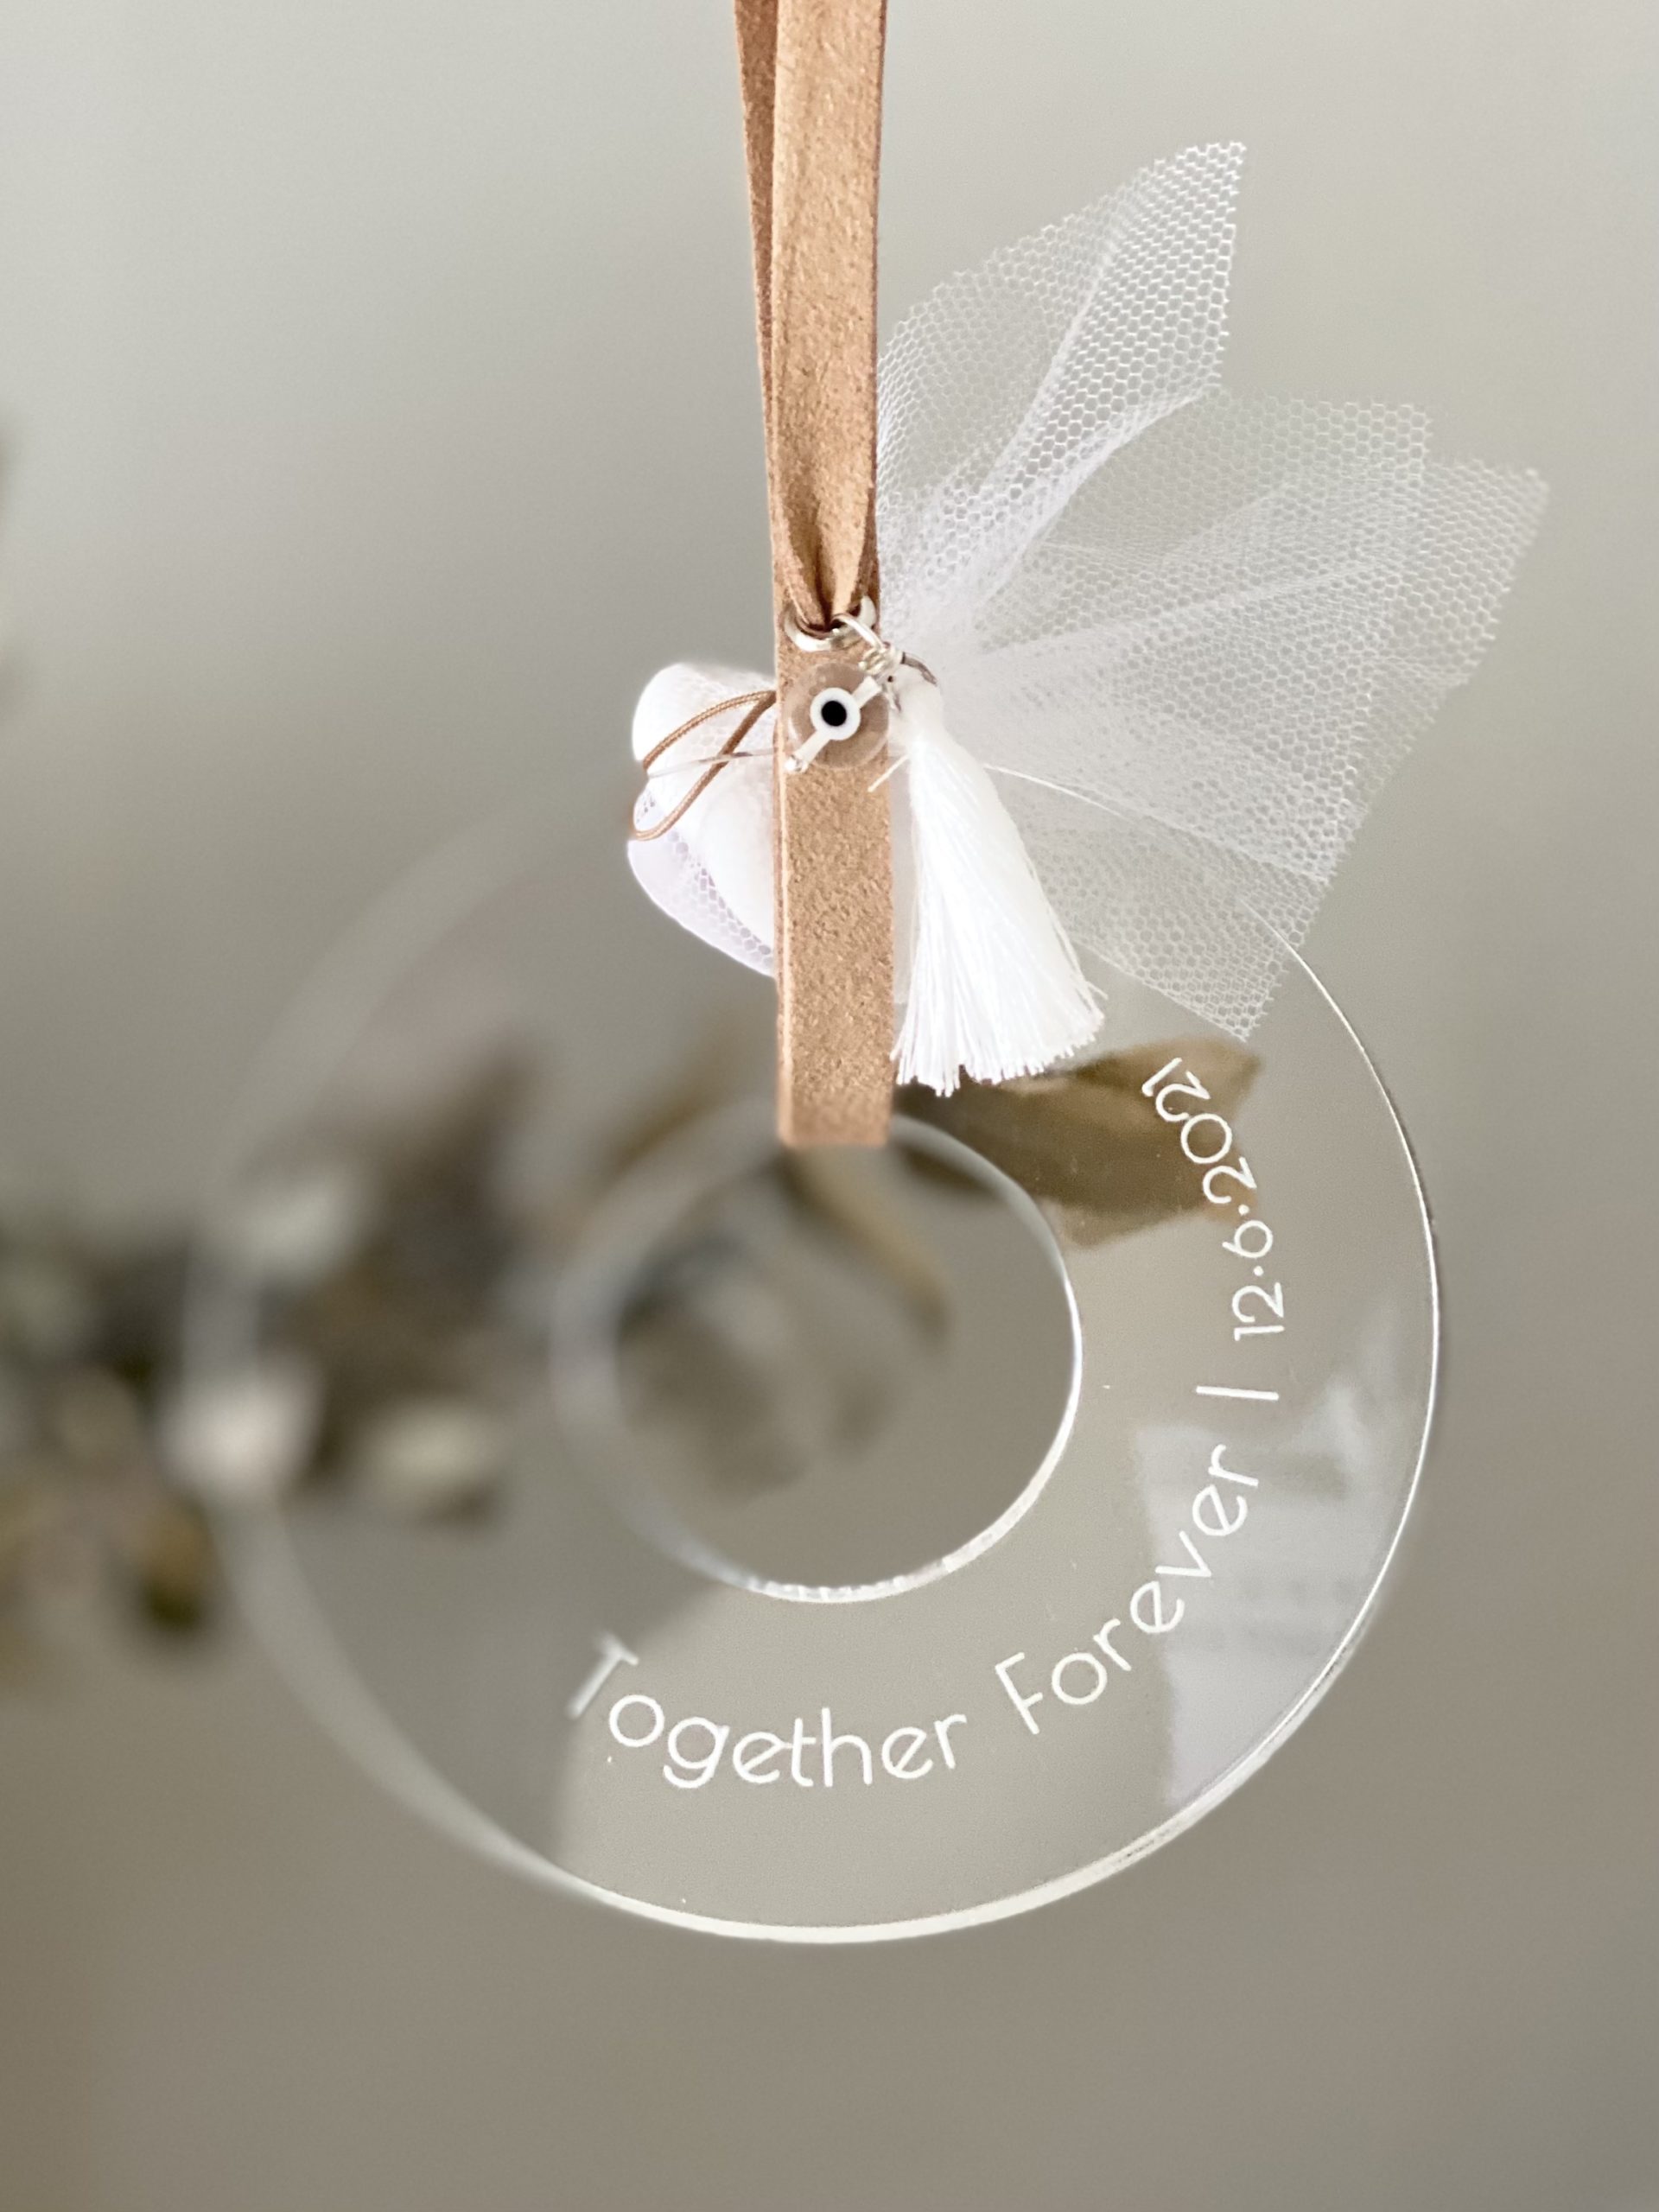 together-forever-wedding-favor-engraved-plexiglass